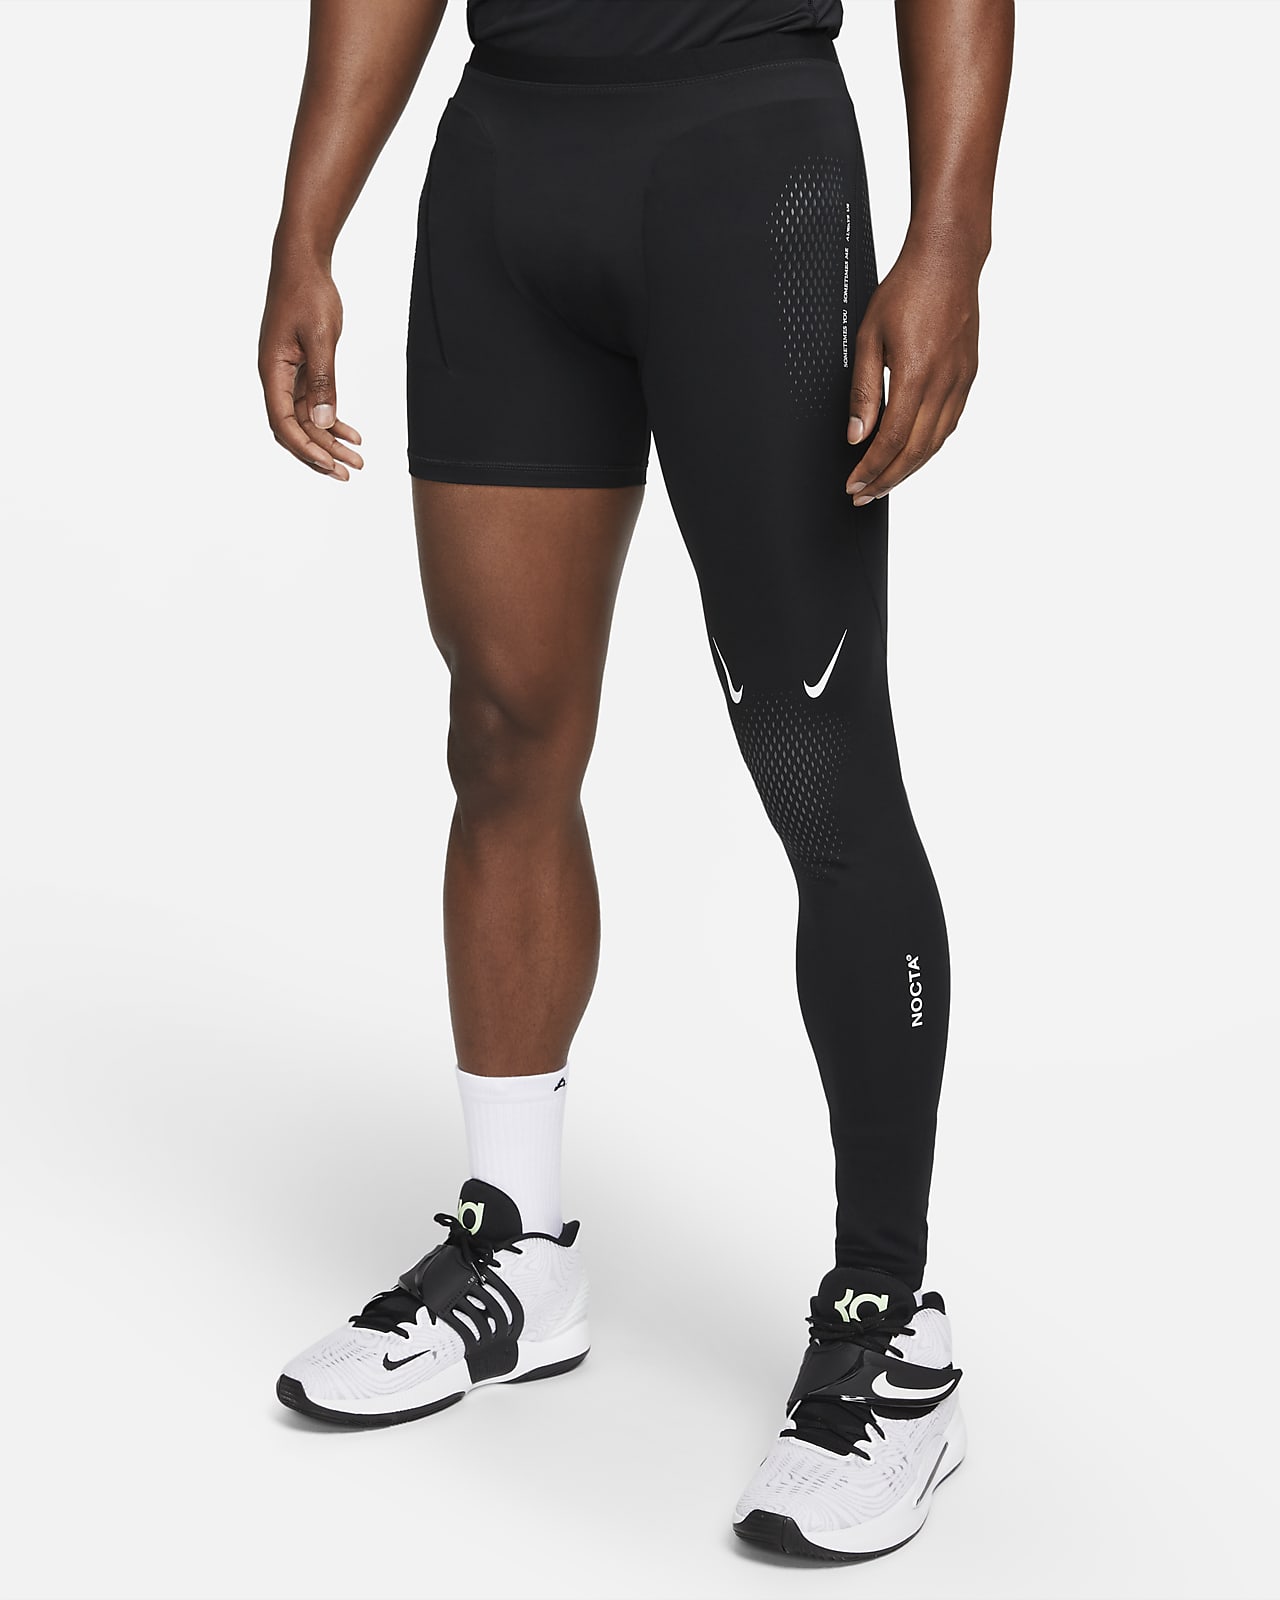 Men's One Leg Compression Pants Single Leg Sports Workout Base